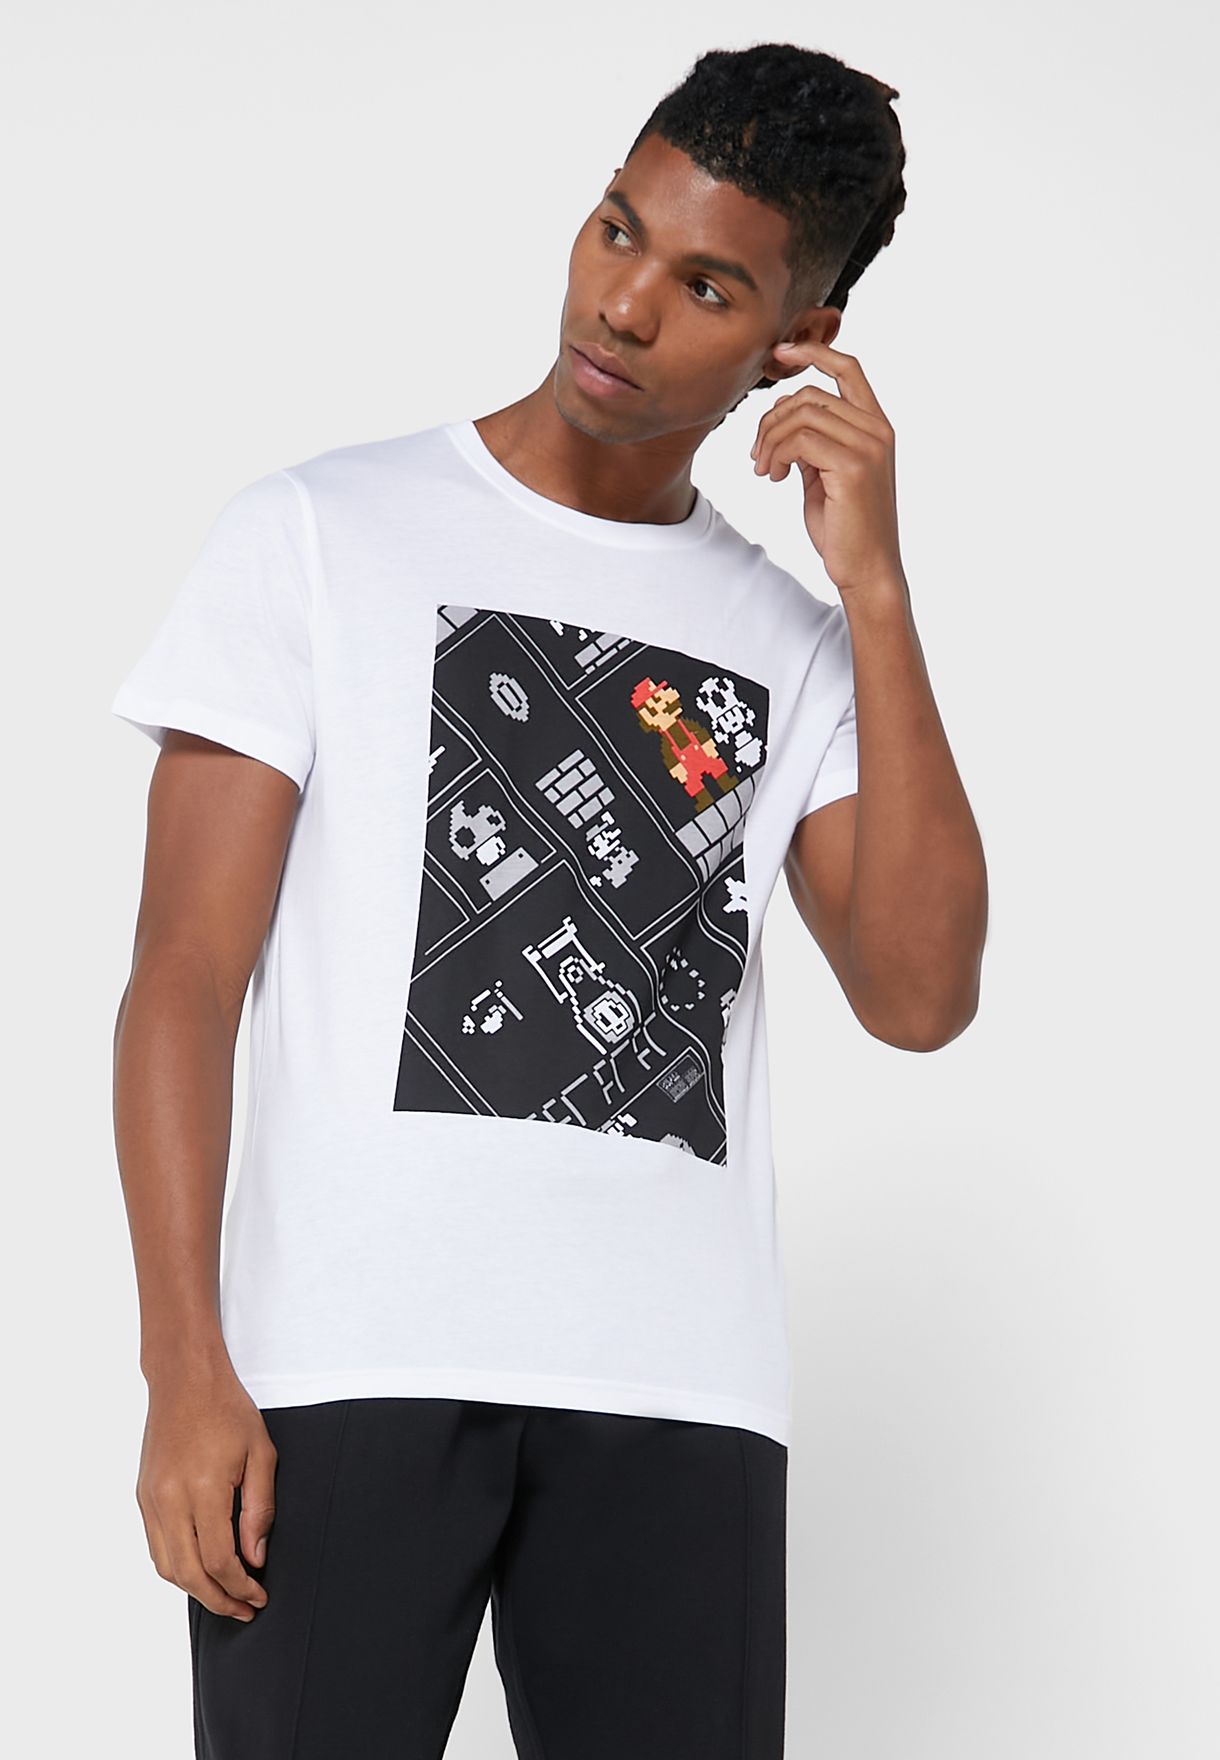 8Bit Super Mario Bros Crew Neck T-Shirt